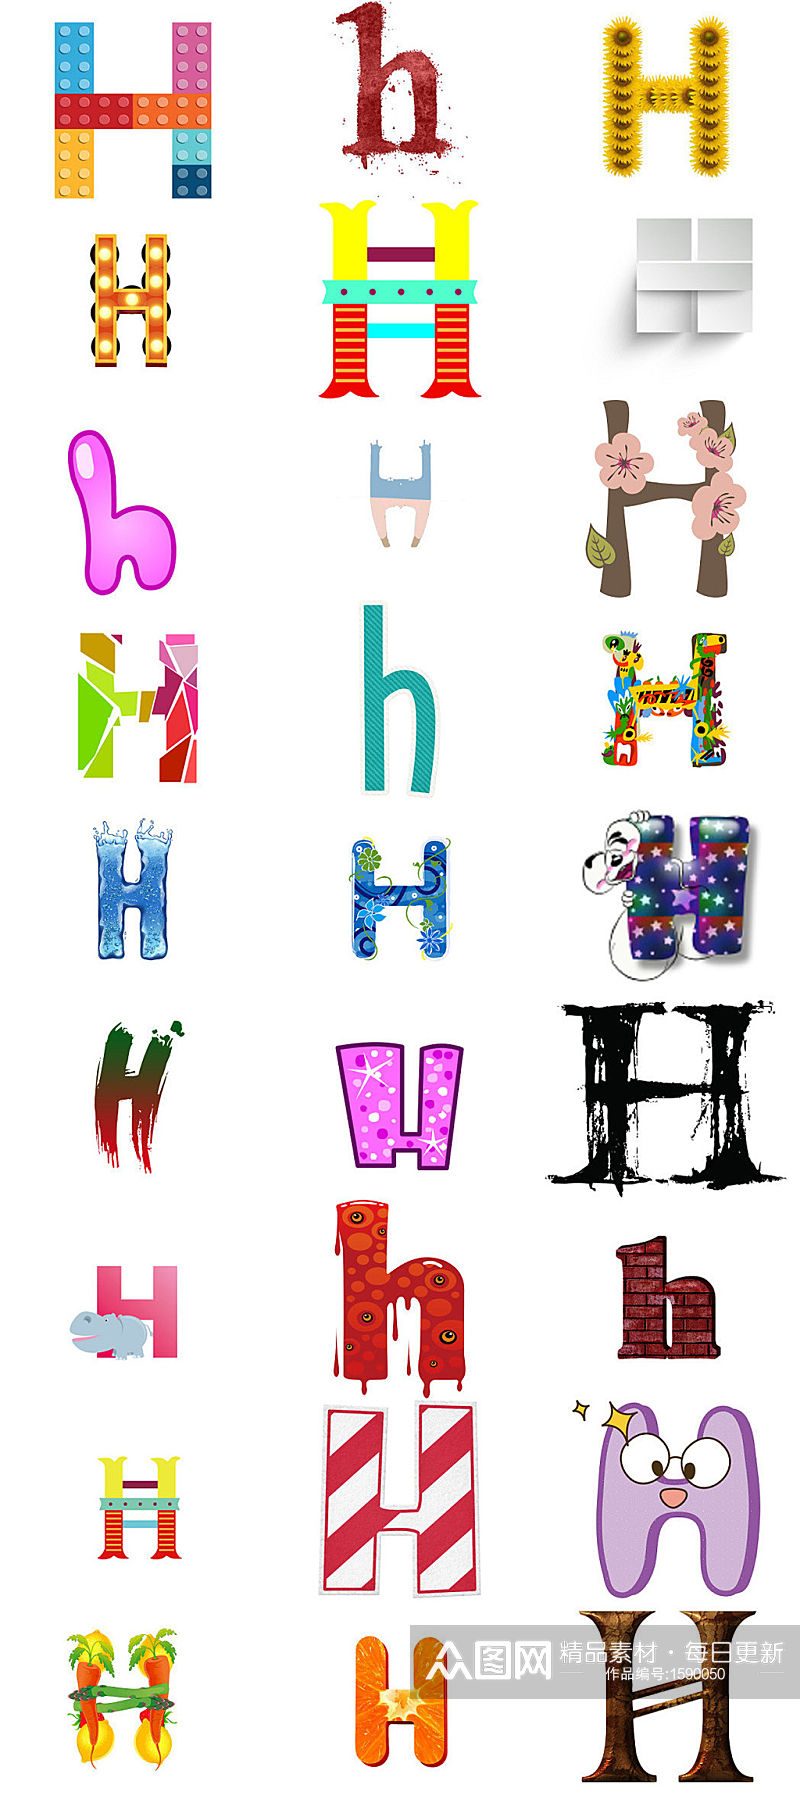 英文字母H艺术字体设计素材素材